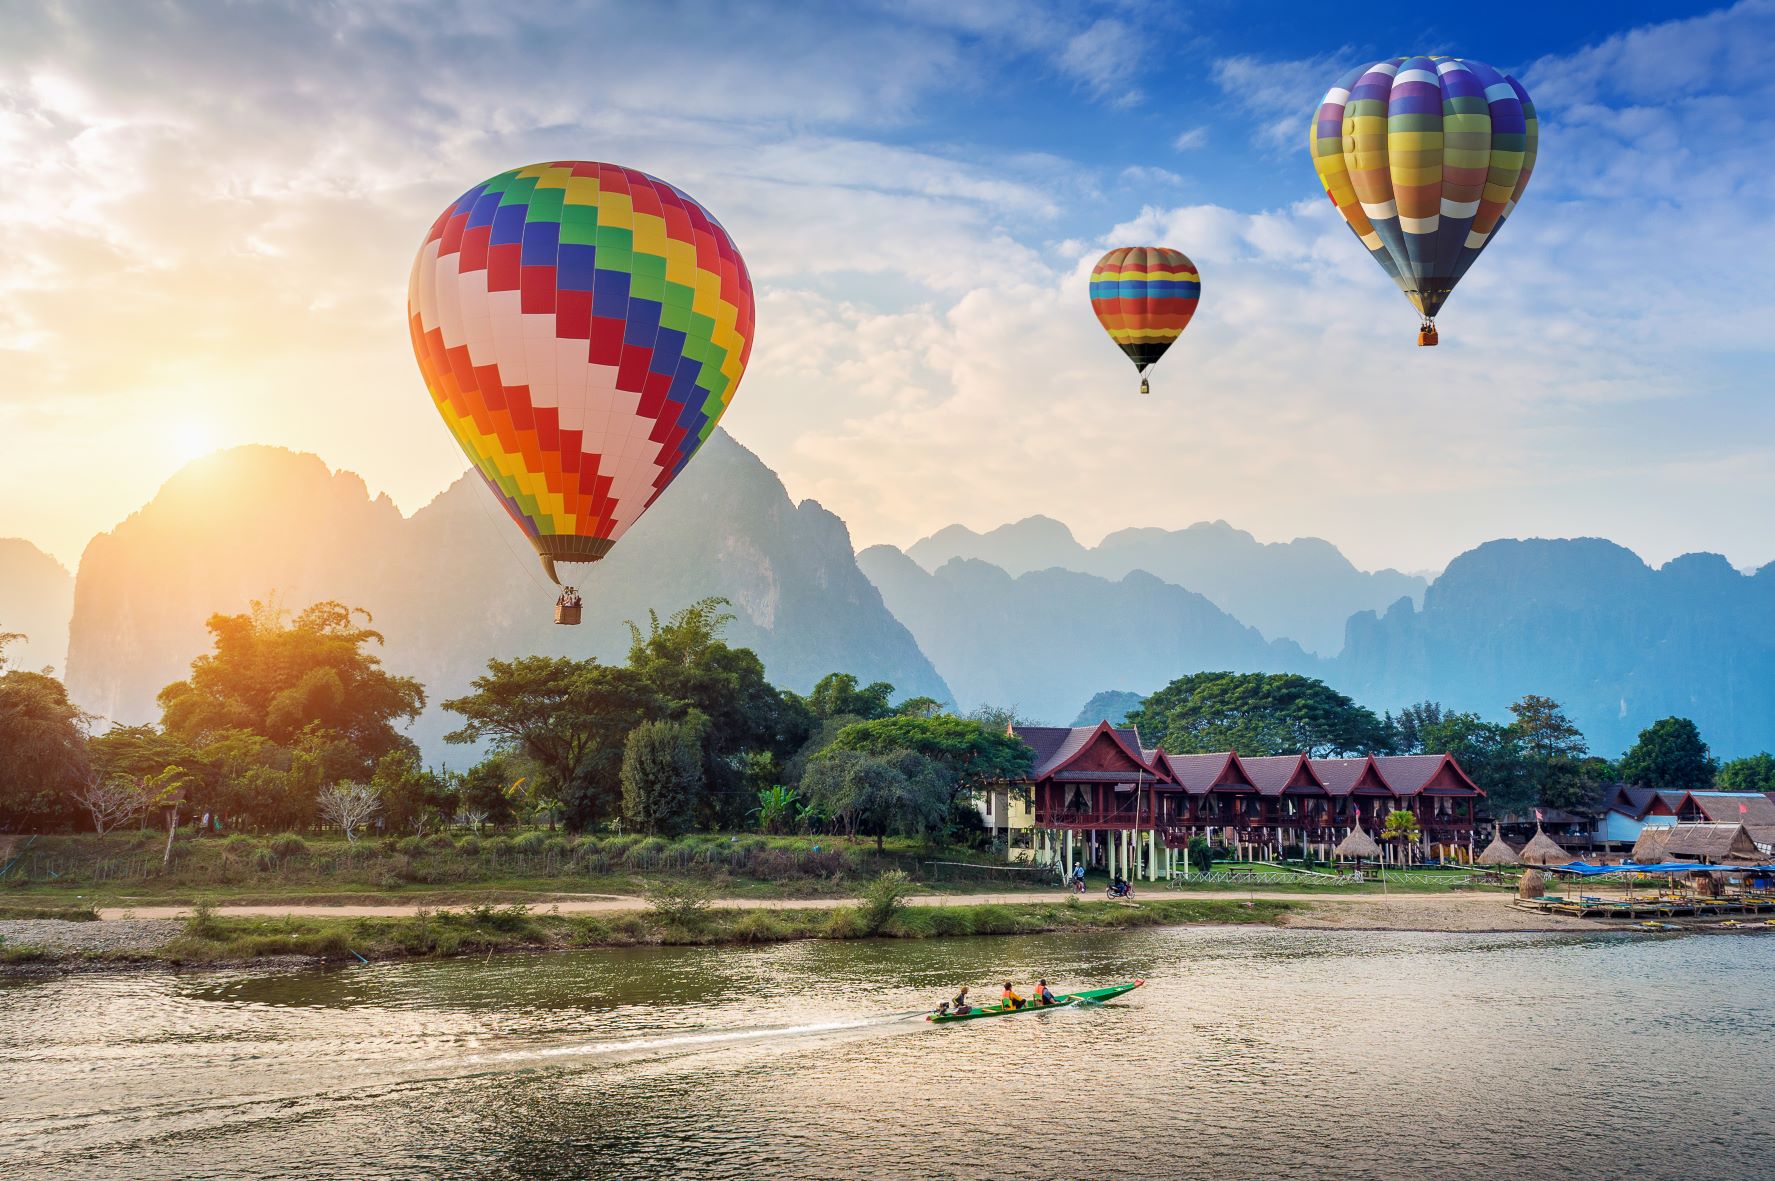 ethisch verlangen identificatie Vang Vieng Travel Guide - Love Laos